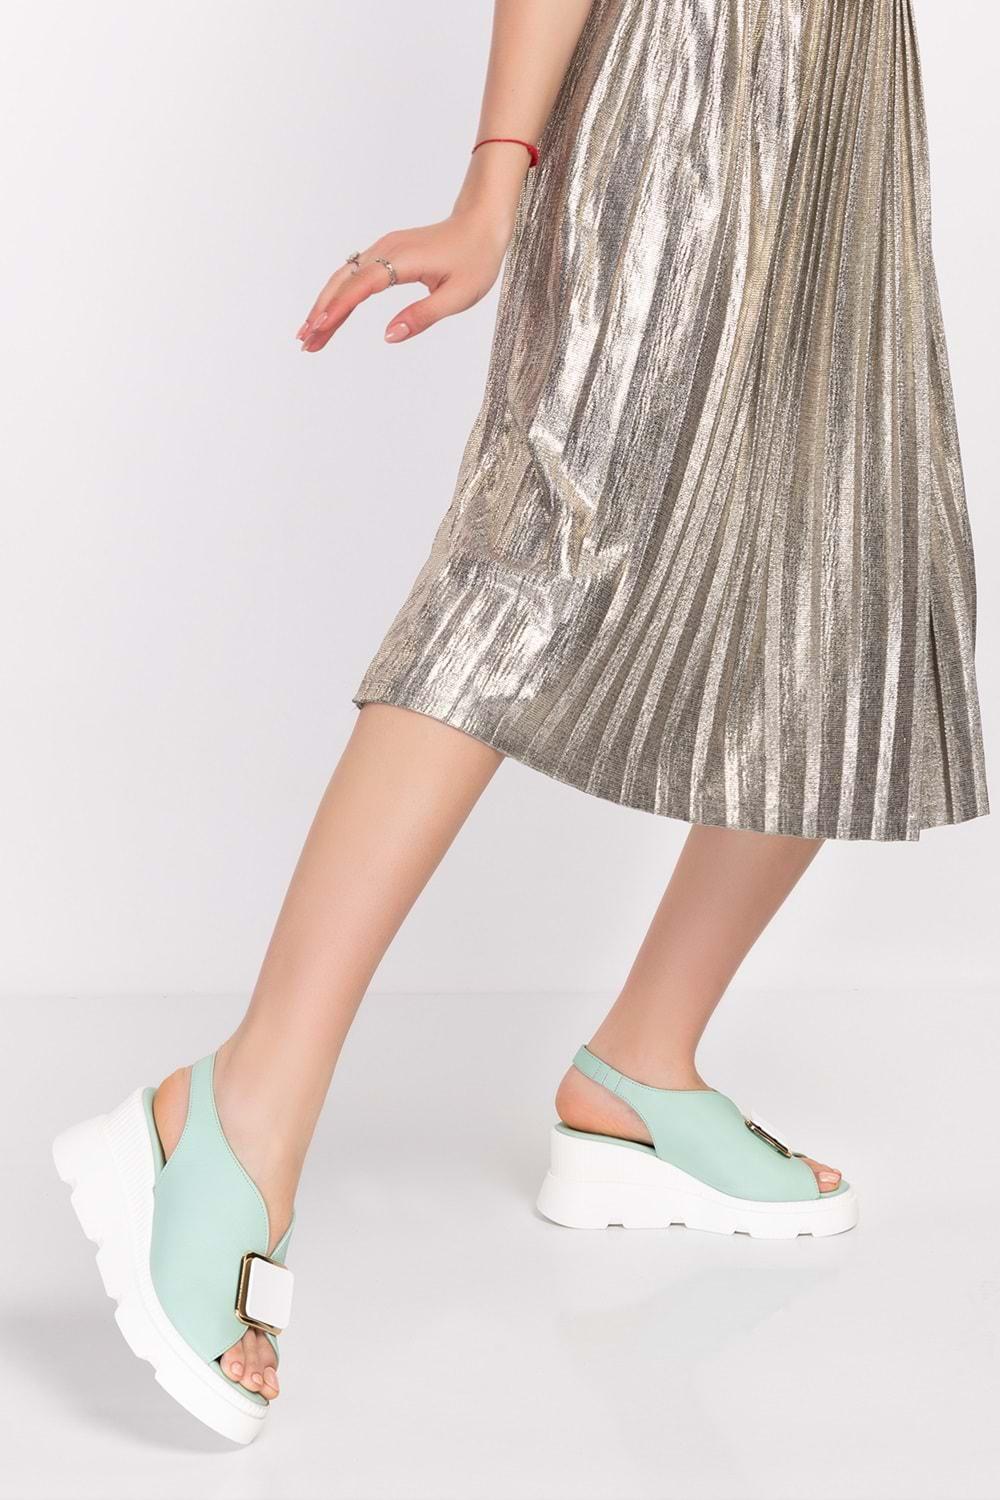 Gondol Kadın Hakiki Deri Dolgu Topuklu Platformlu Sandalet şk.5170 - Mint - 37